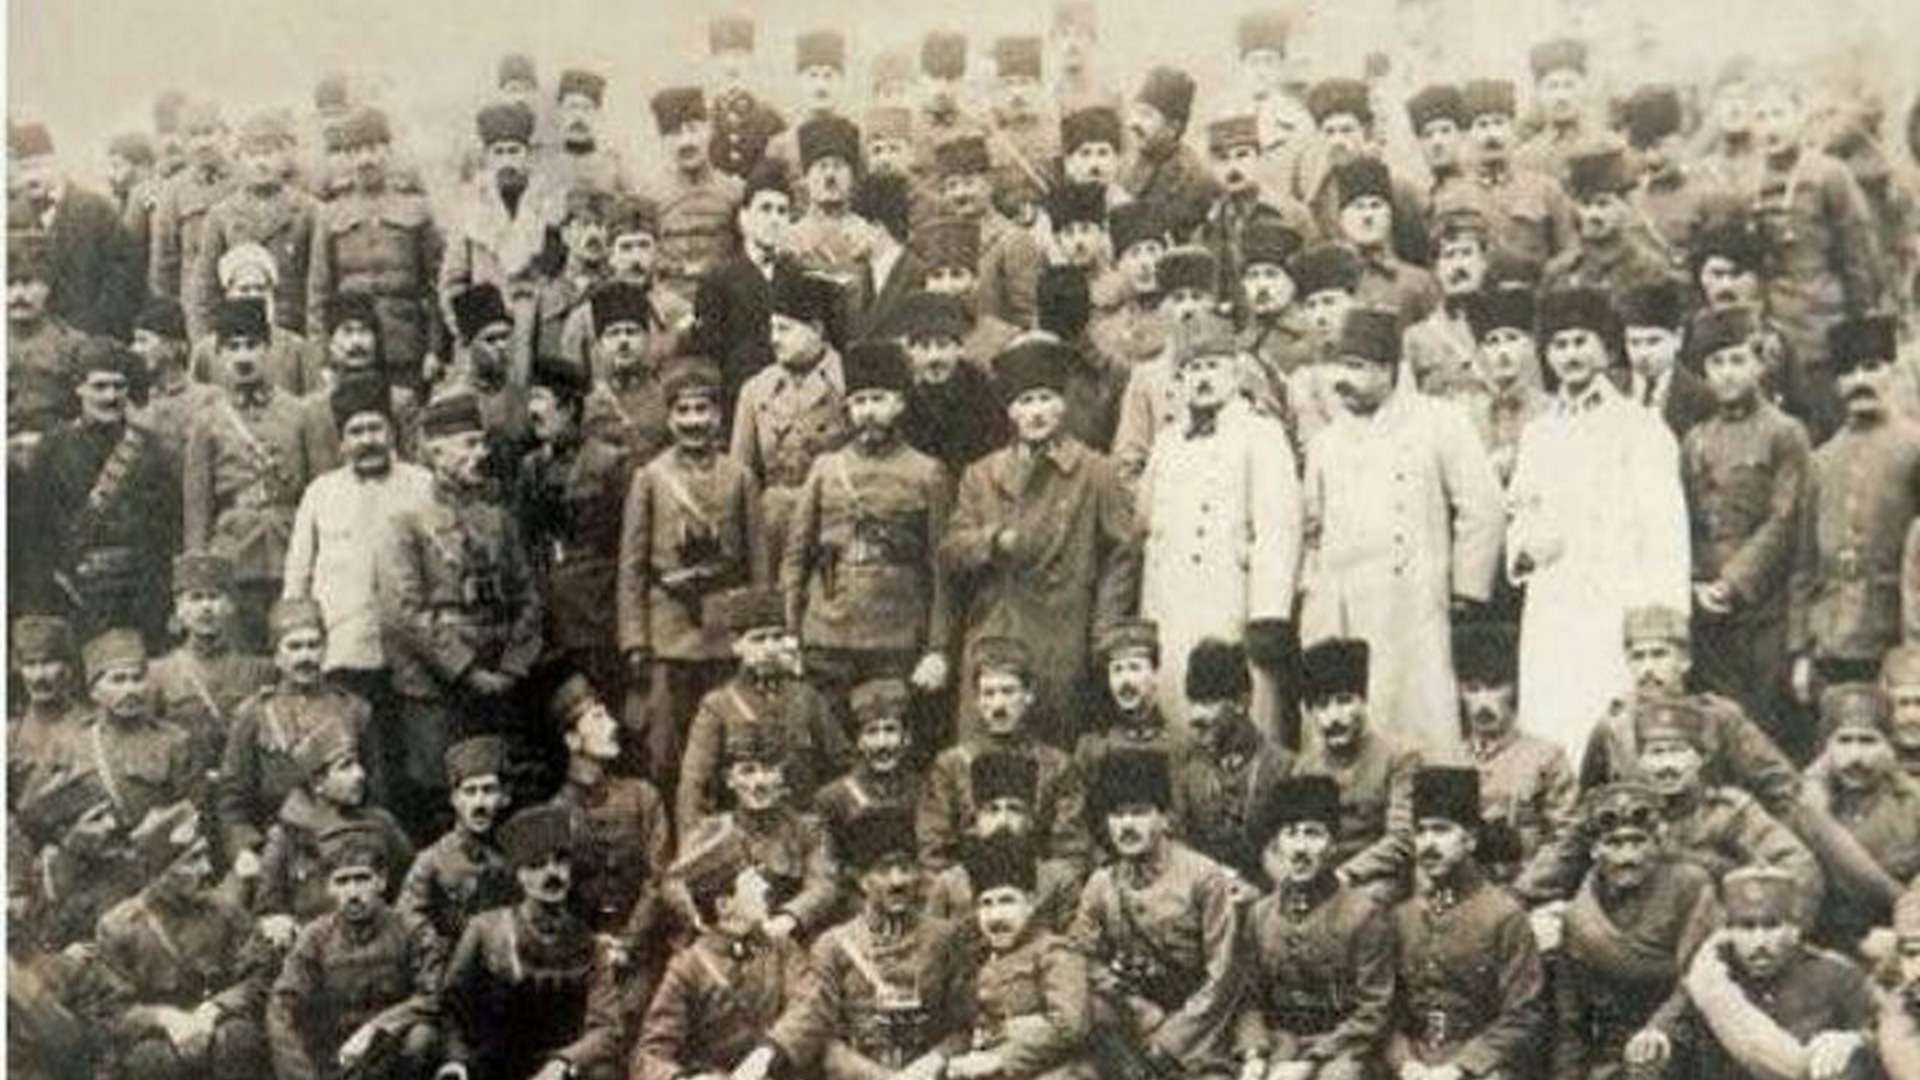 Mustafa Kemal Atatürk football match 28 July 1922 